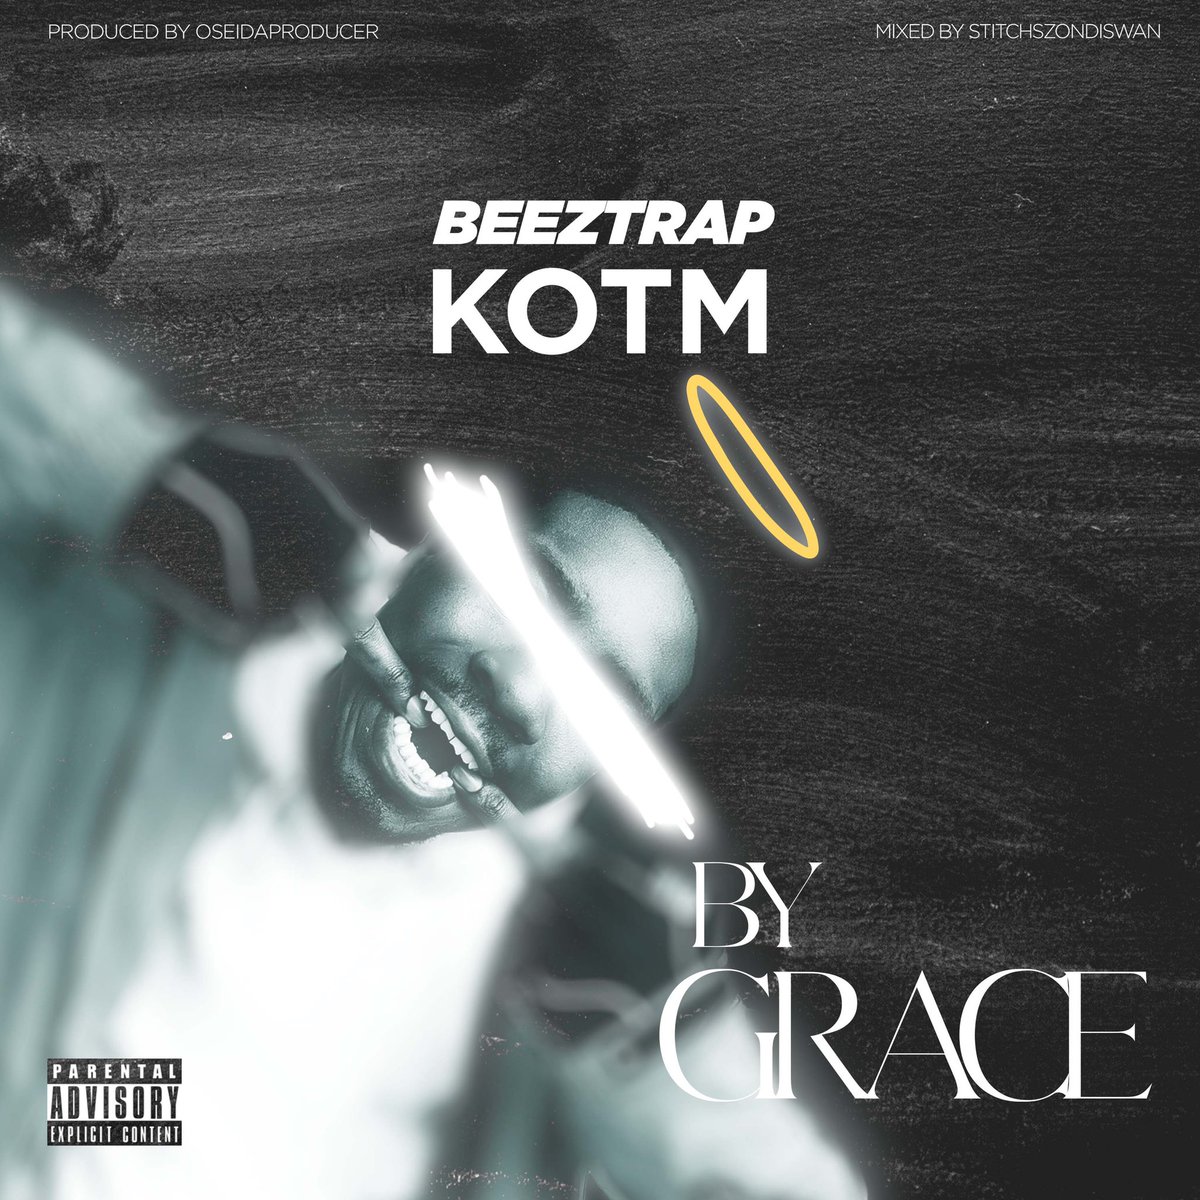 Beeztrap KOTM - By Grace